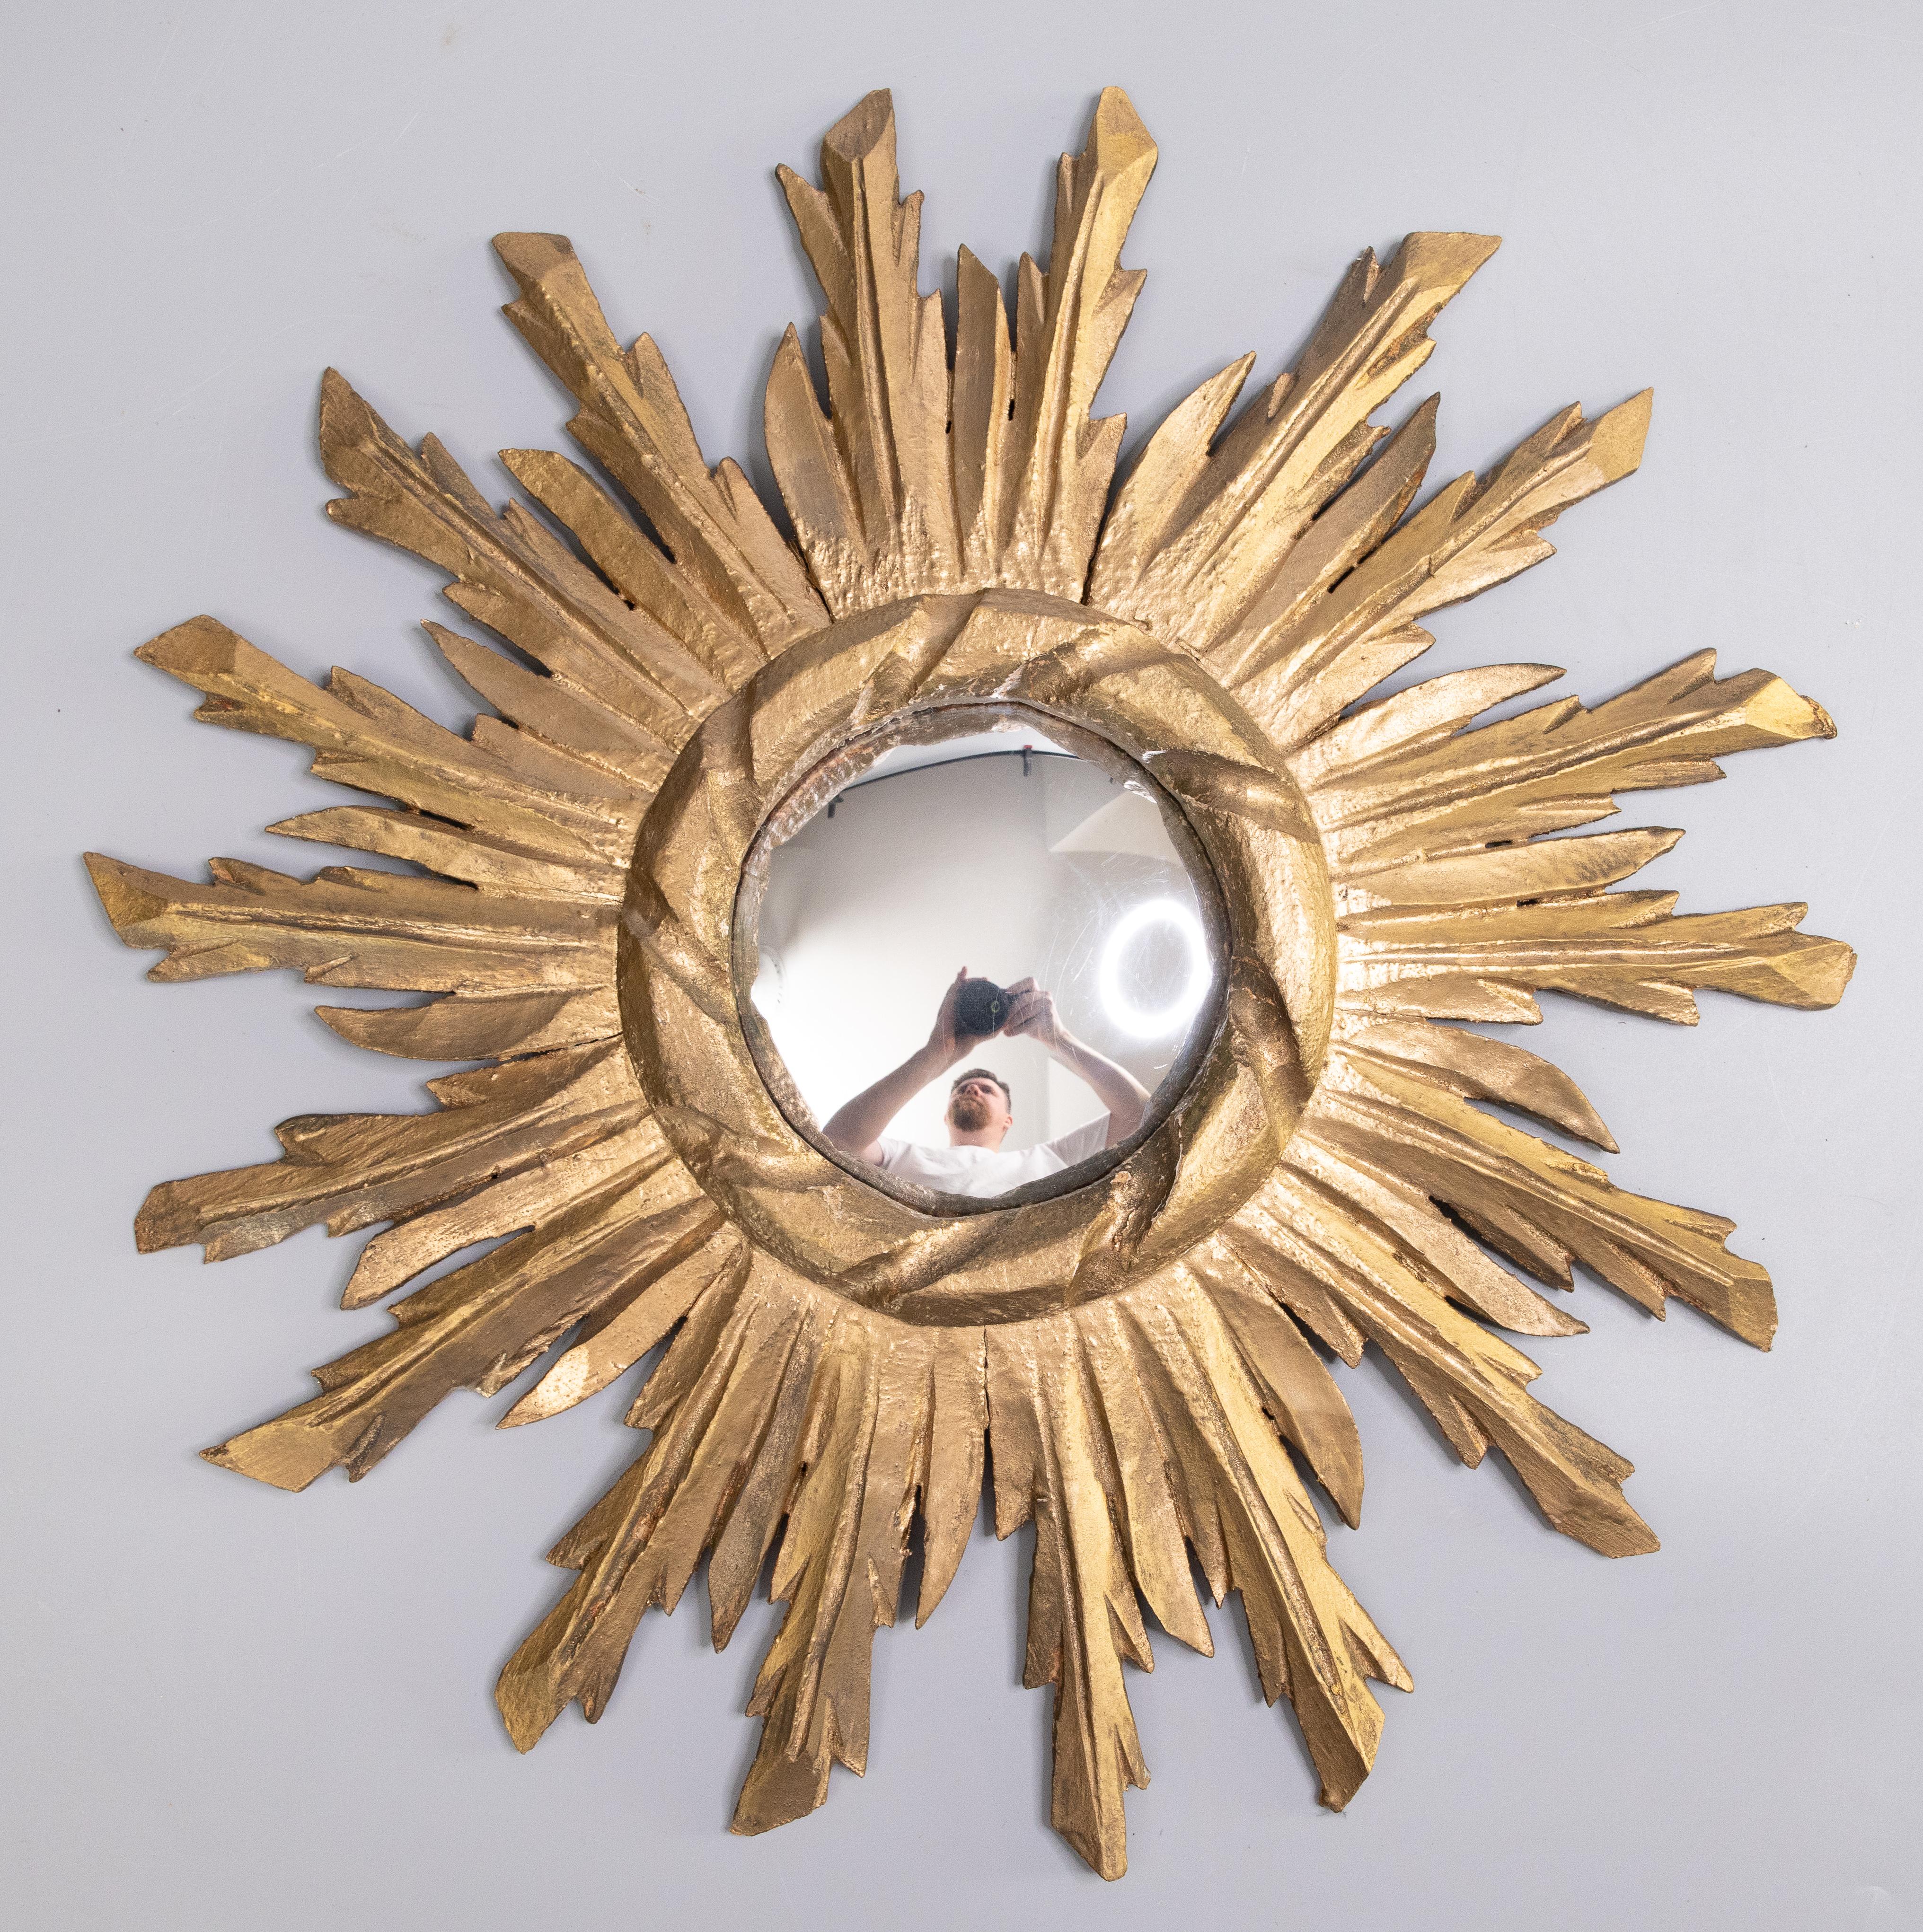 Eine atemberaubende Vintage Französisch vergoldetem Holz sunburst oder Starburst Spiegel, circa 1950. Der ursprüngliche konvexe Spiegel ist von handgeschnitzten, abwechselnd langen Strahlen umgeben, die eine schöne vergoldete Patina